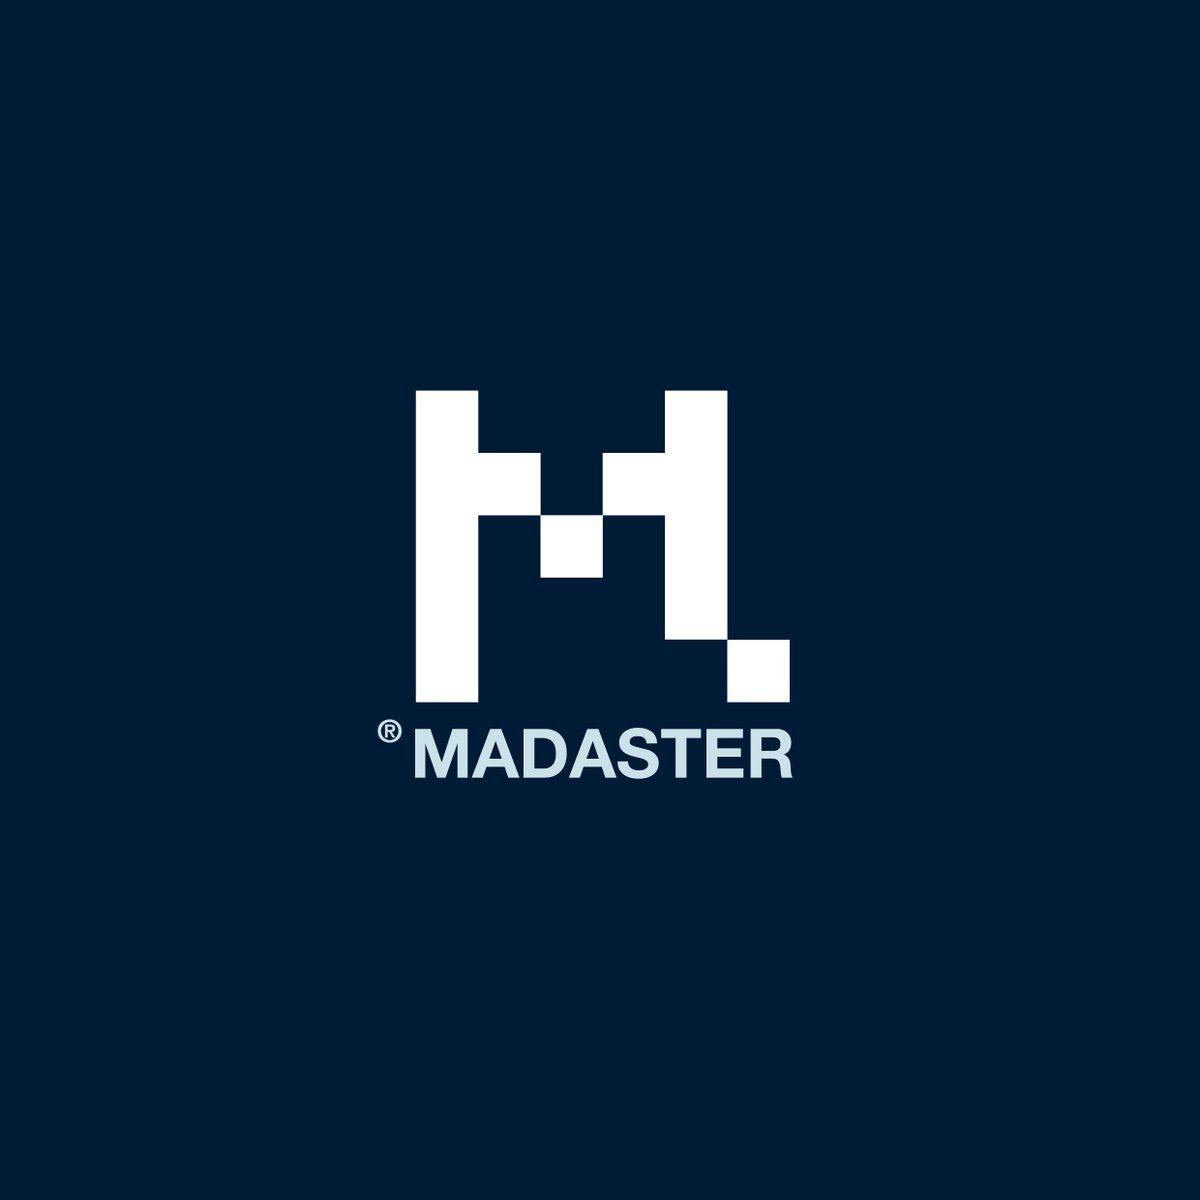 Eliminate Logo - Madaster Twitterissä: 